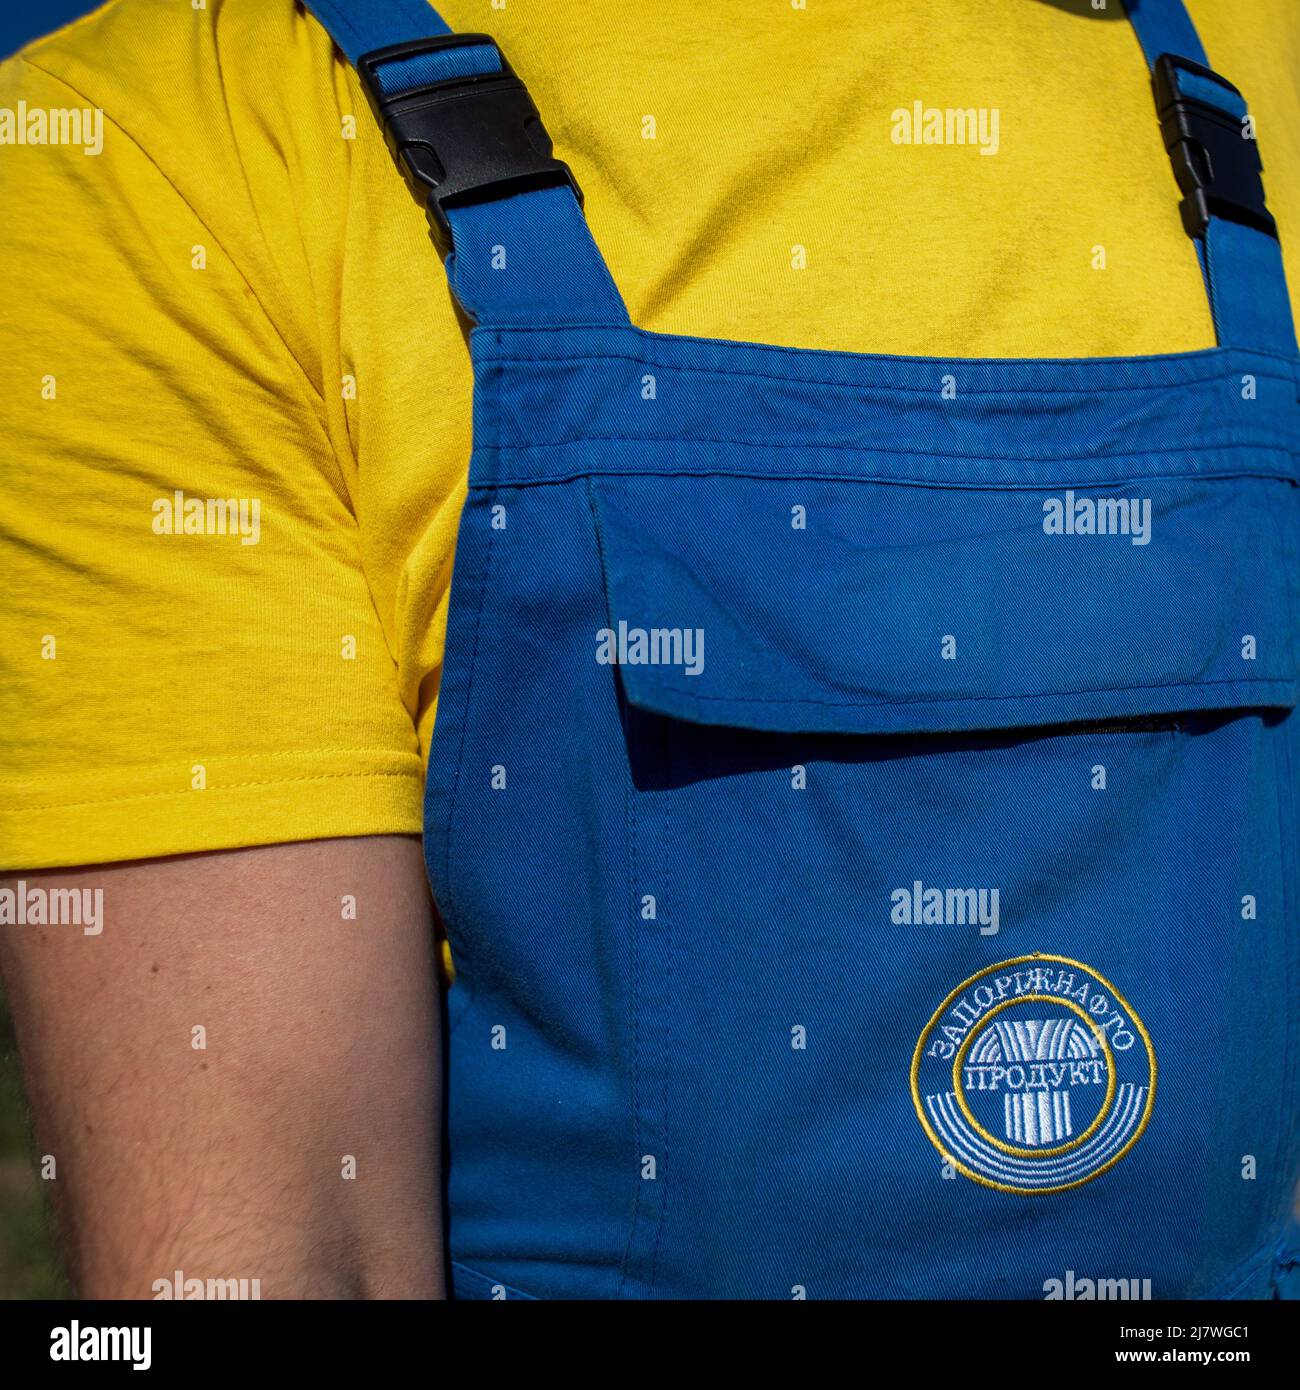 Michael Bunel / le Pictorium - i colori dell'Ucraina - 10/05/2014 - Ucraina / Donbass / Donetsk - dettaglio dell'uniforme di un distributore di benzina Foto Stock